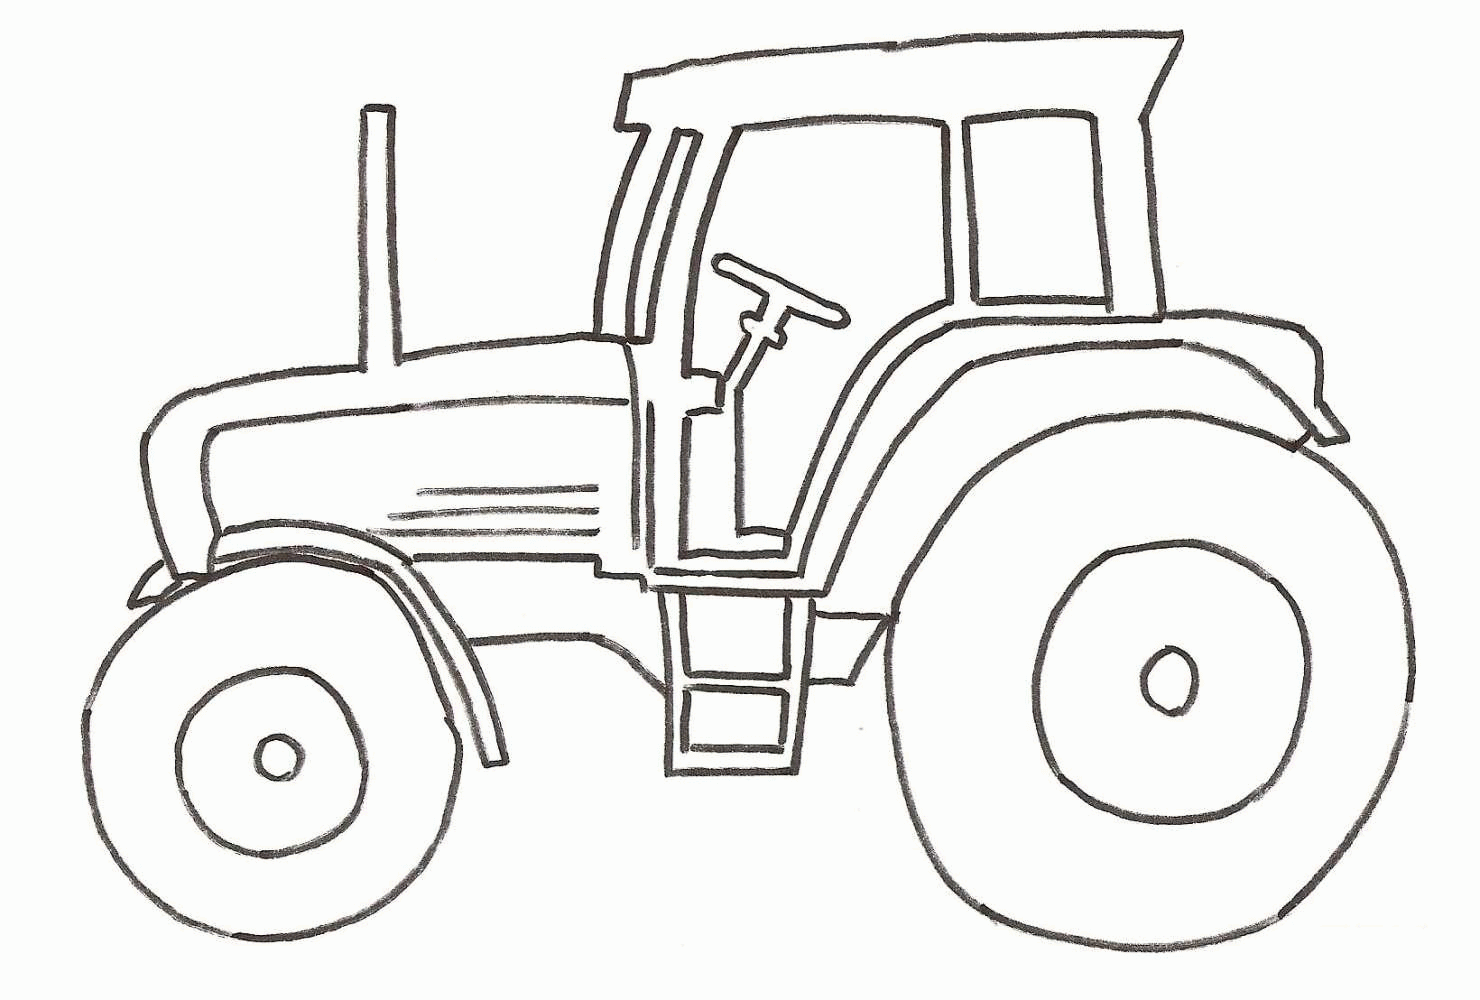 Kolorowanka traktory, traktor stoi bokiem bez kierowcy ze stopniami prowadzącymi do kabiny - ciągnik na podwyższonym zawieszeniu